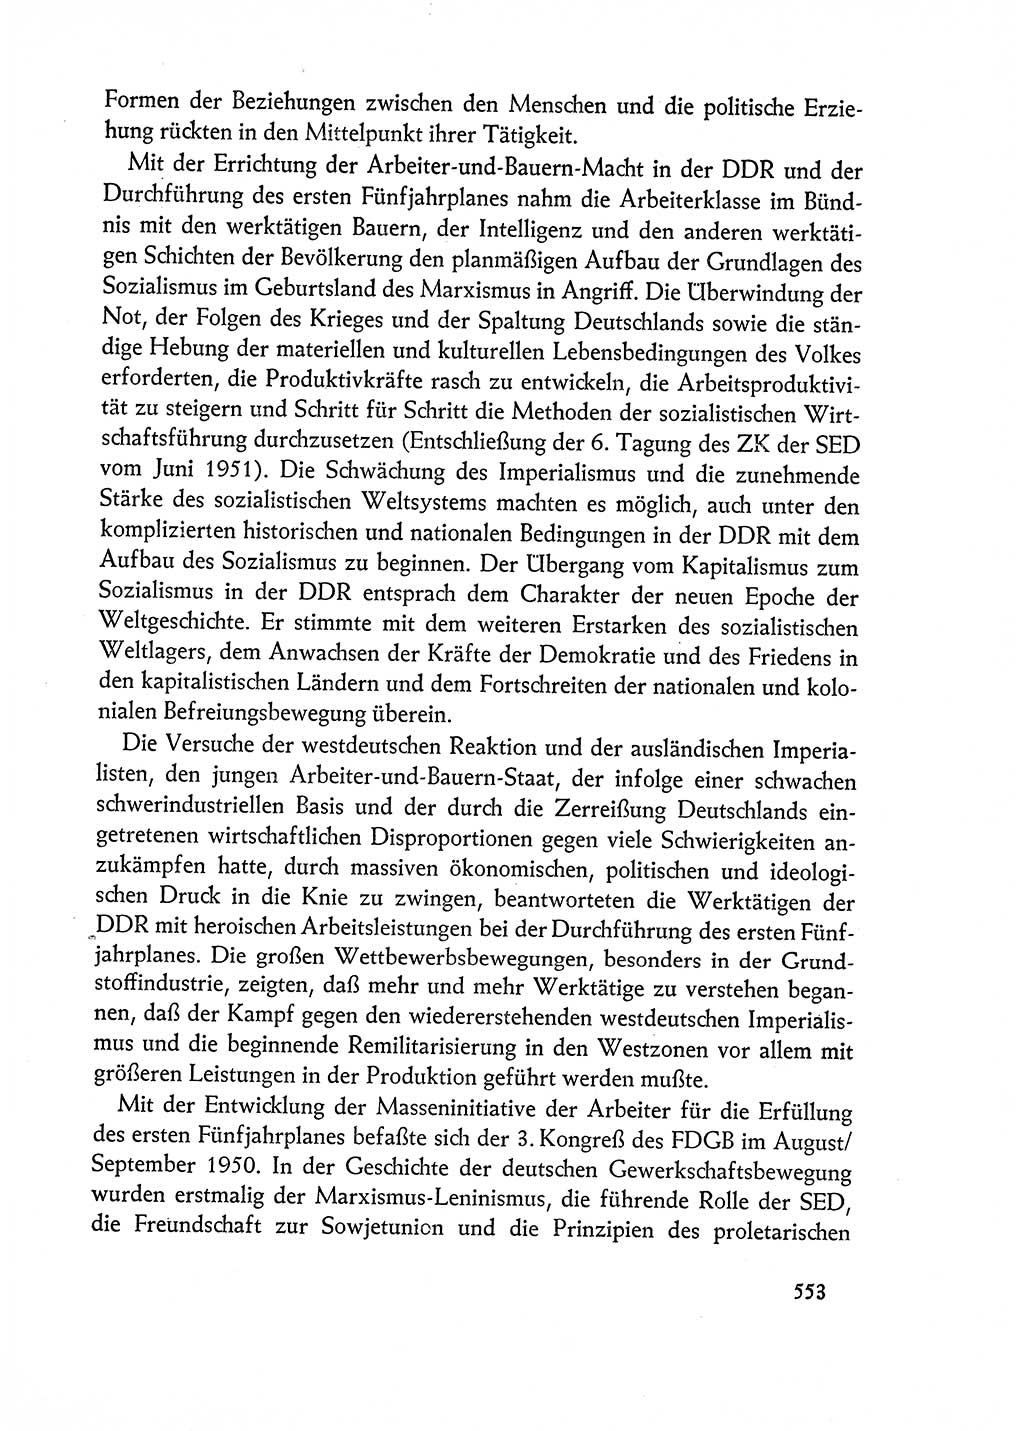 Dokumente der Sozialistischen Einheitspartei Deutschlands (SED) [Deutsche Demokratische Republik (DDR)] 1962-1963, Seite 553 (Dok. SED DDR 1962-1963, S. 553)